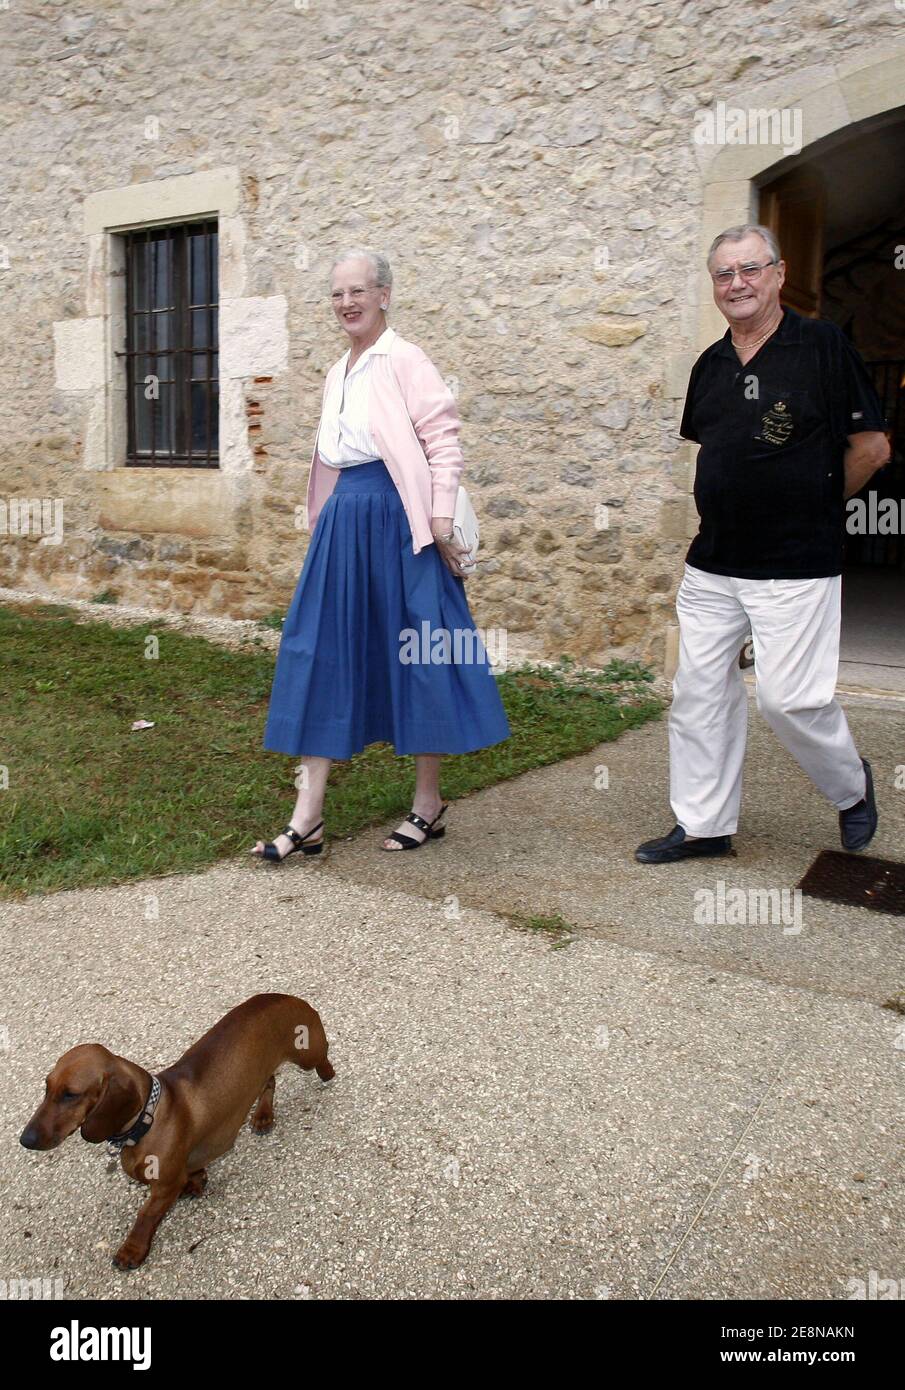 La reine Margrethe II du Danemark (L), le prince Henrik du Danemark (R) et le chien Helike arrivent pour assister à un appel photo dans leur résidence d'été 'Château de Caix' près de Cahors, France, le 7 août 2007. Photo de Patrick Bernard/ABACAPRESS.COM Banque D'Images